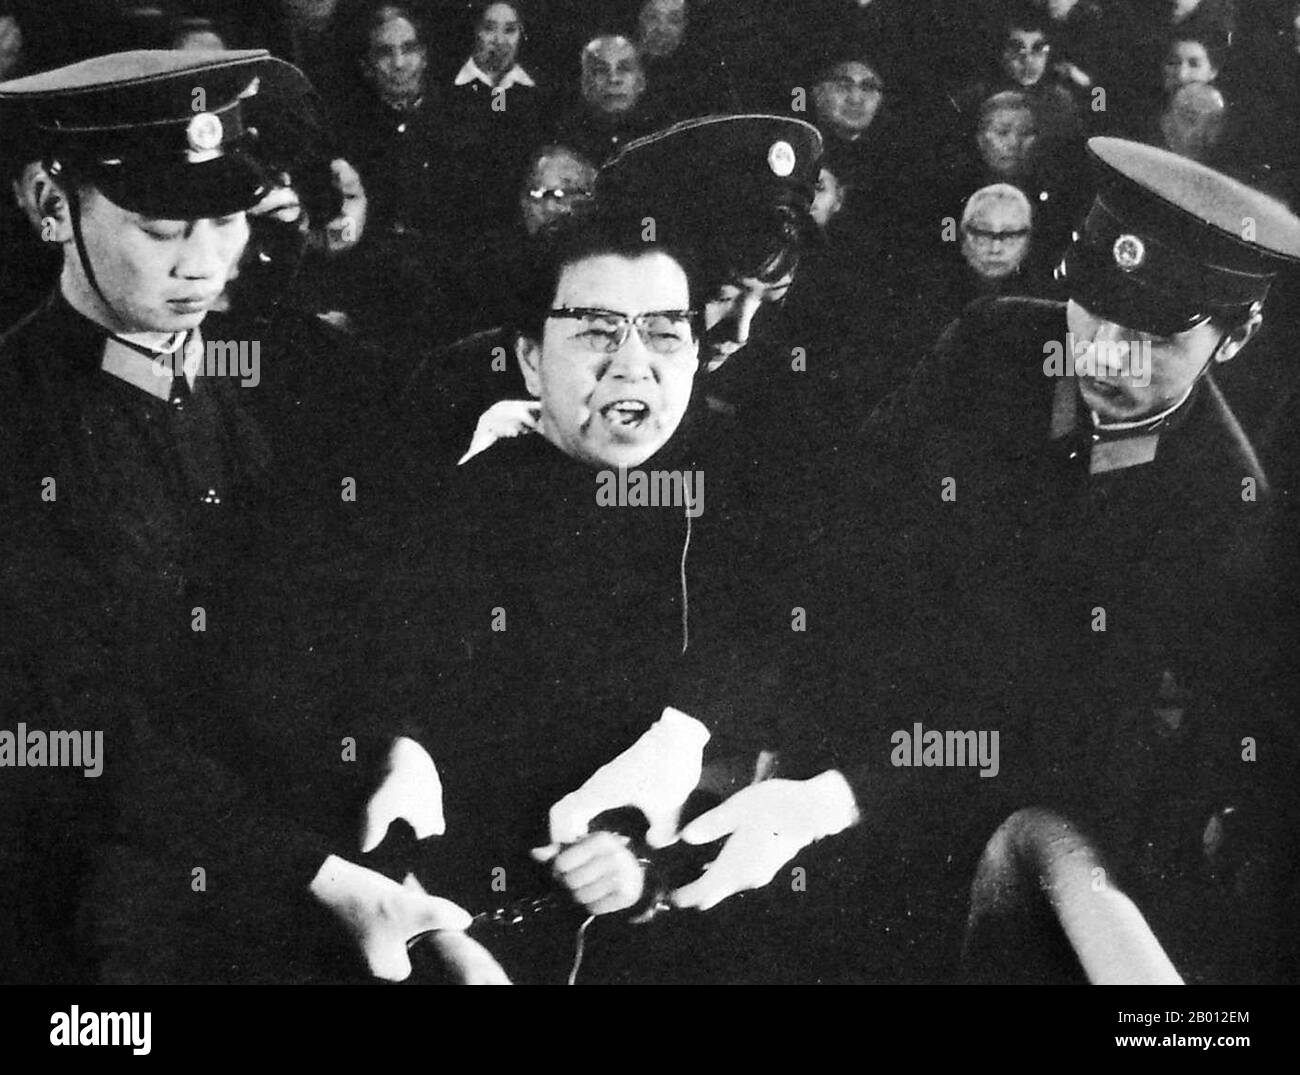 Chine : Jiang Qing (1914-1991), également connue sous le nom de Madame Mao, après sa chute du pouvoir et son arrestation comme contre-révolutionnaire. Elle a été menottée et provocante en cour, c. 1980. Jiang Qing (Chiang CH'ing, 1914 mars – 14 mai 1991) était le pseudonyme utilisé par la dernière femme du dirigeant chinois Mao Tsé-toung et la figure de pouvoir majeure du Parti communiste chinois. Elle est allée par le nom de scène LAN Ping au cours de sa carrière d'acteur, et a été connu par divers autres noms pendant sa vie. Elle a épousé Mao à Ya'an en novembre 1938, et est parfois appelée Madame Mao dans la littérature occidentale, servant de première dame. Banque D'Images